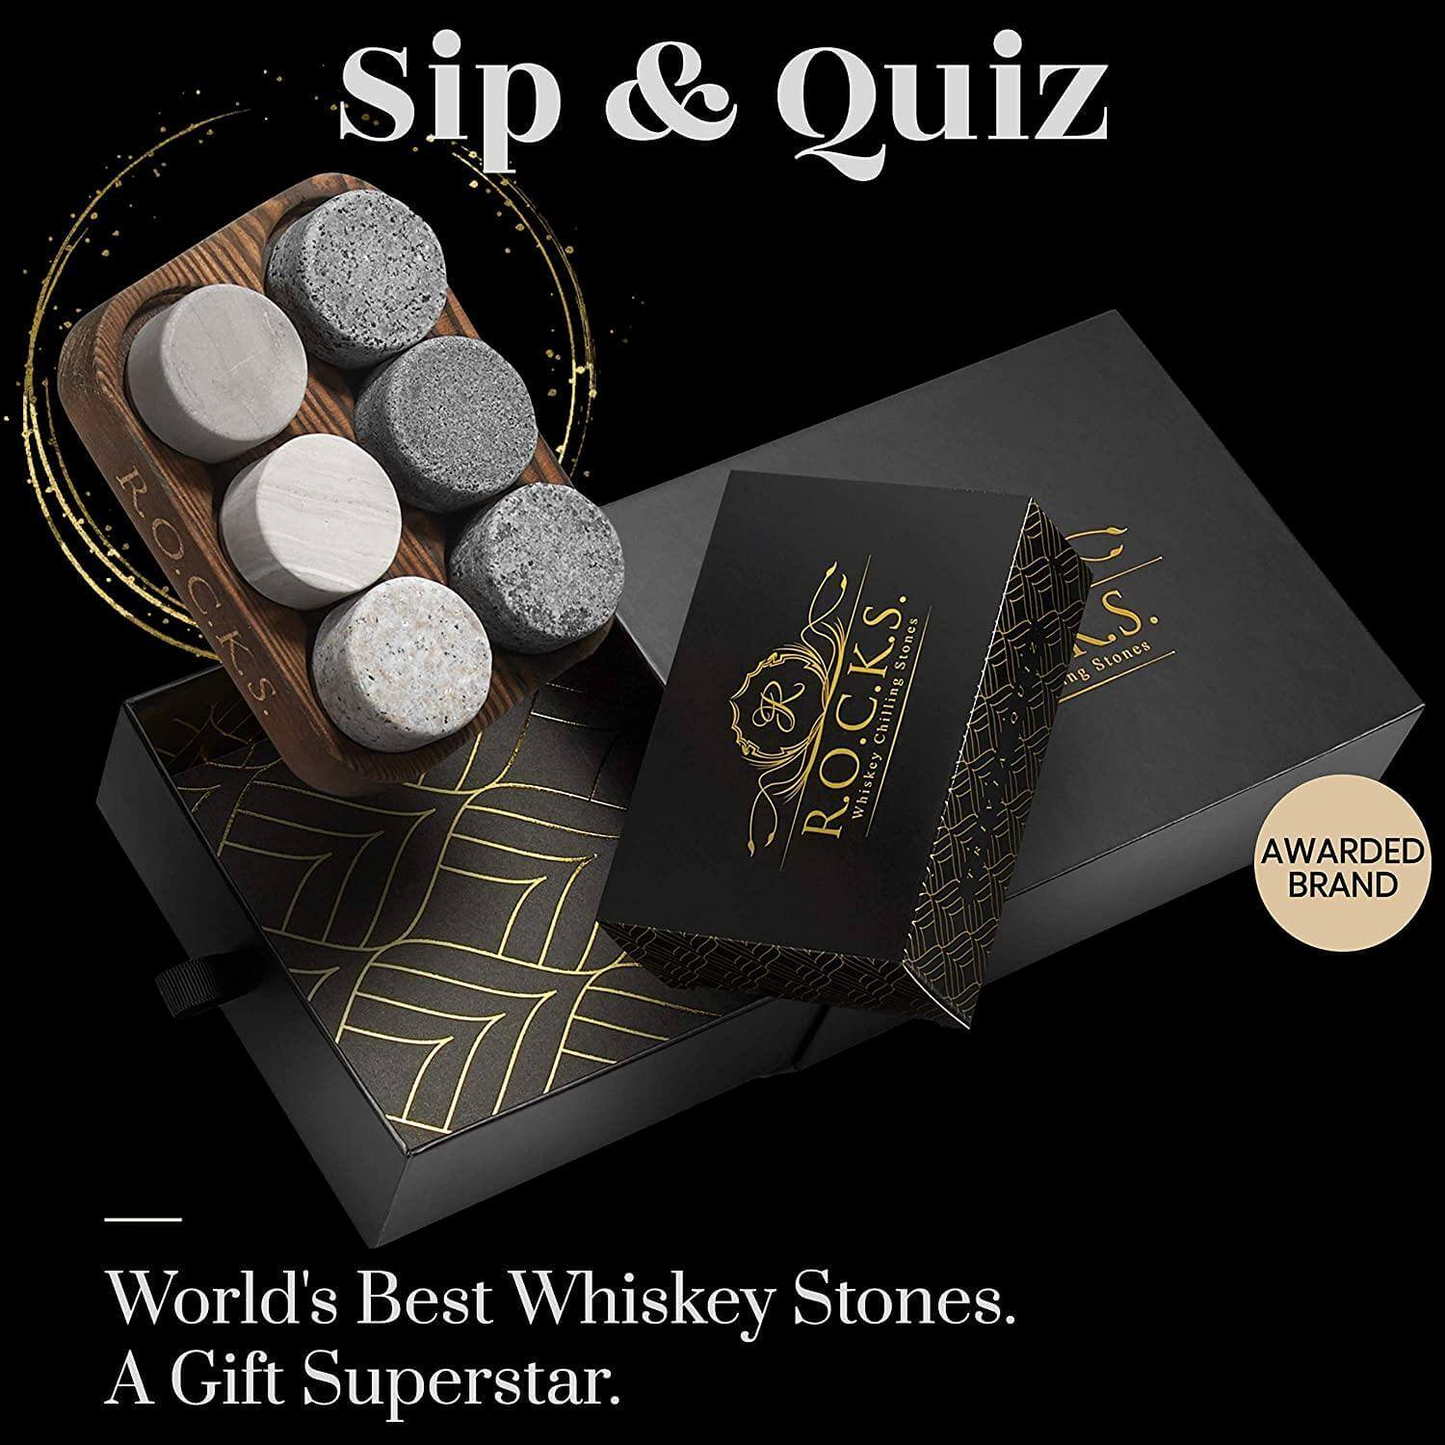 R.O.C.K.S Whiskey Chilling Stones & Whiskey Quiz Gift Set - 100 Q&A